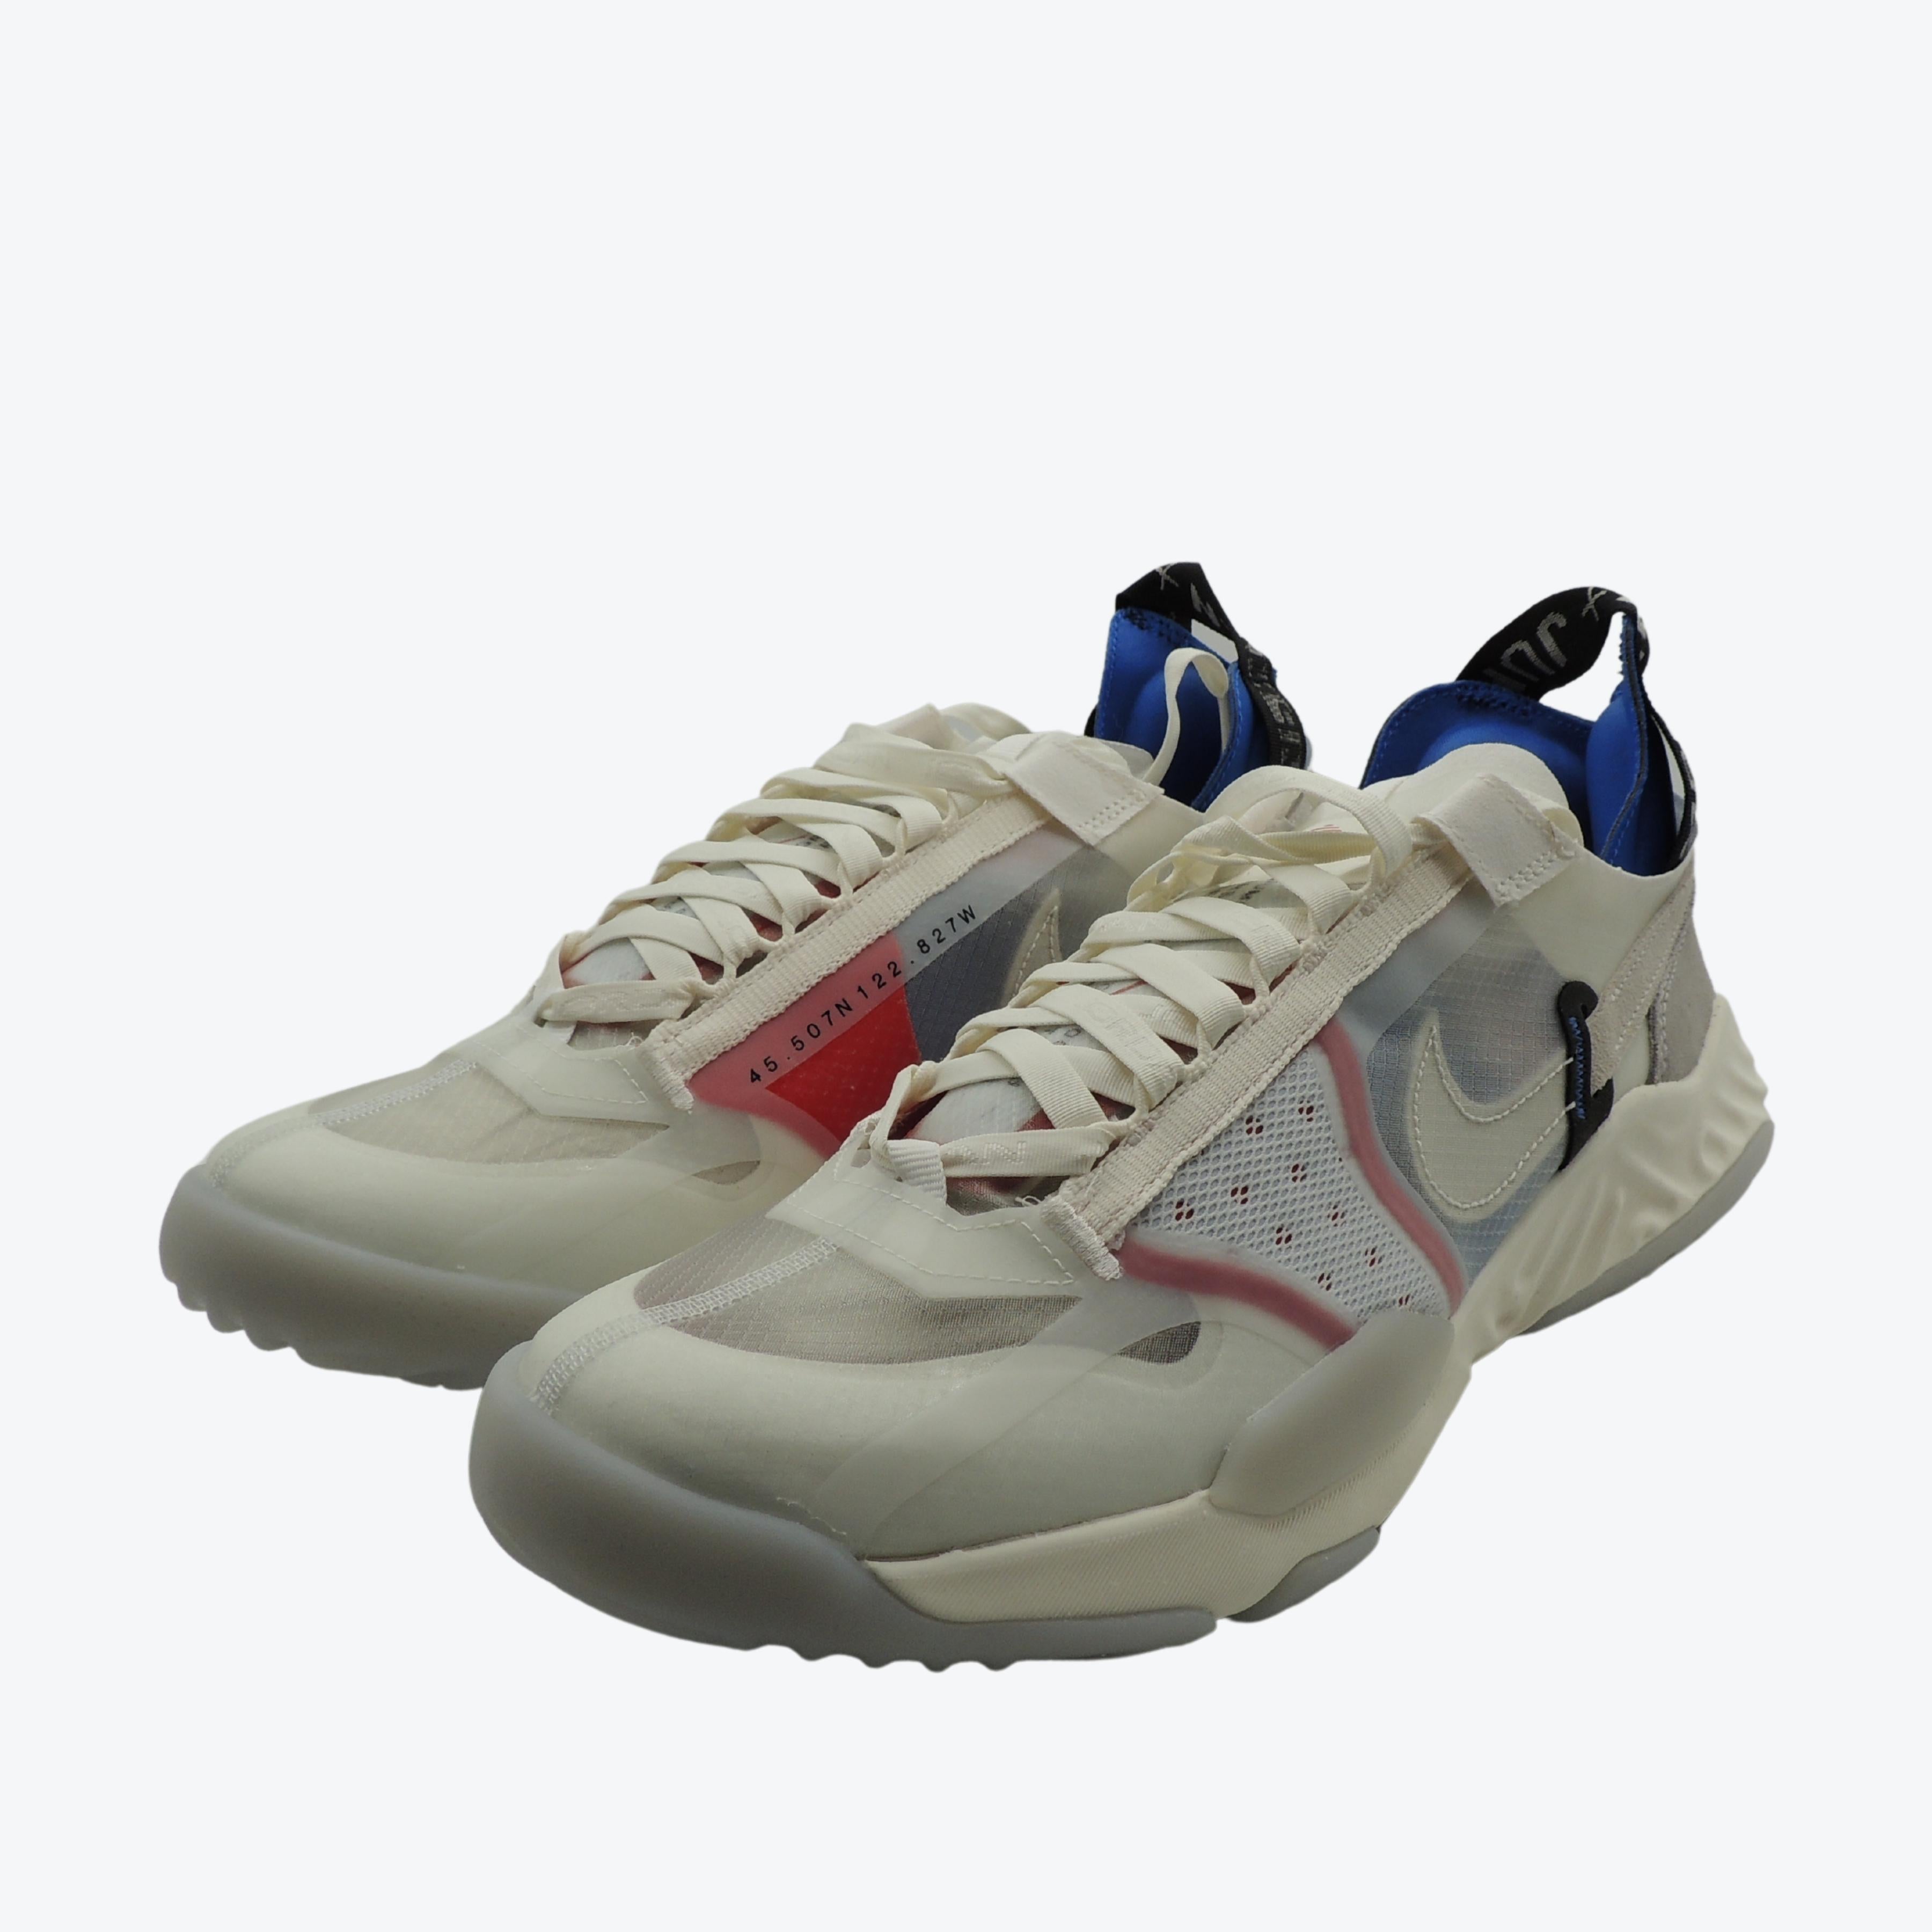 Nike Jordan Delta Breathe Sail/White-Tech Grey UK 8.5